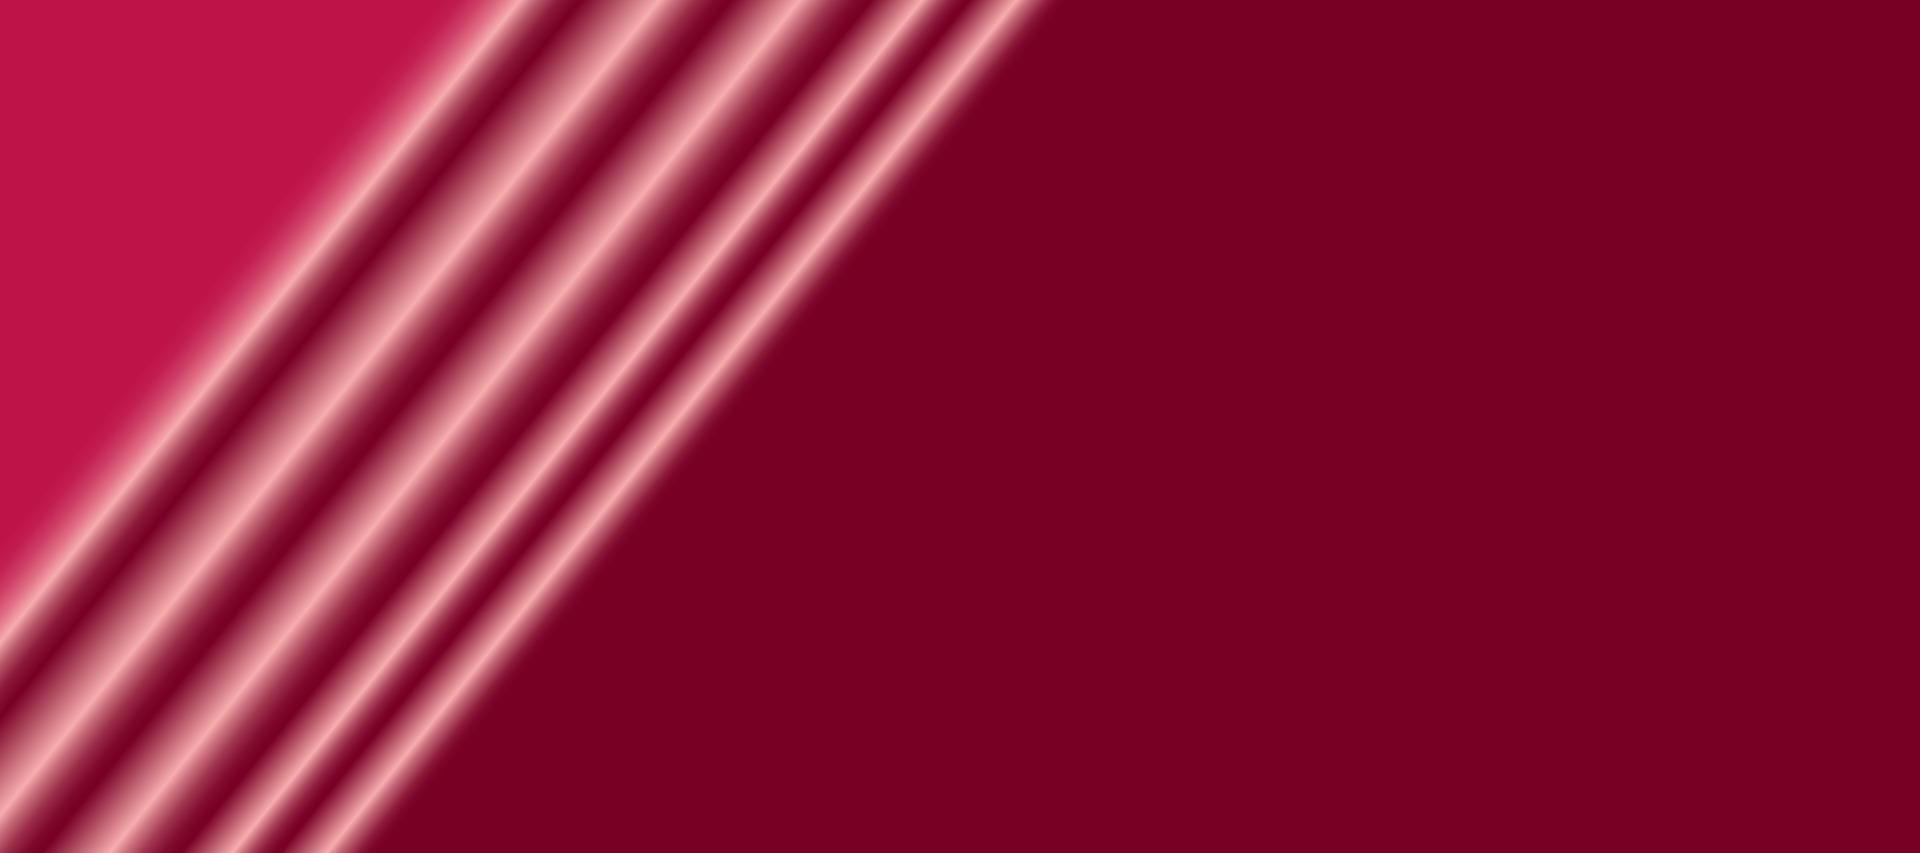 Abstufungshintergrund mit kastanienbrauner Farbe vektor